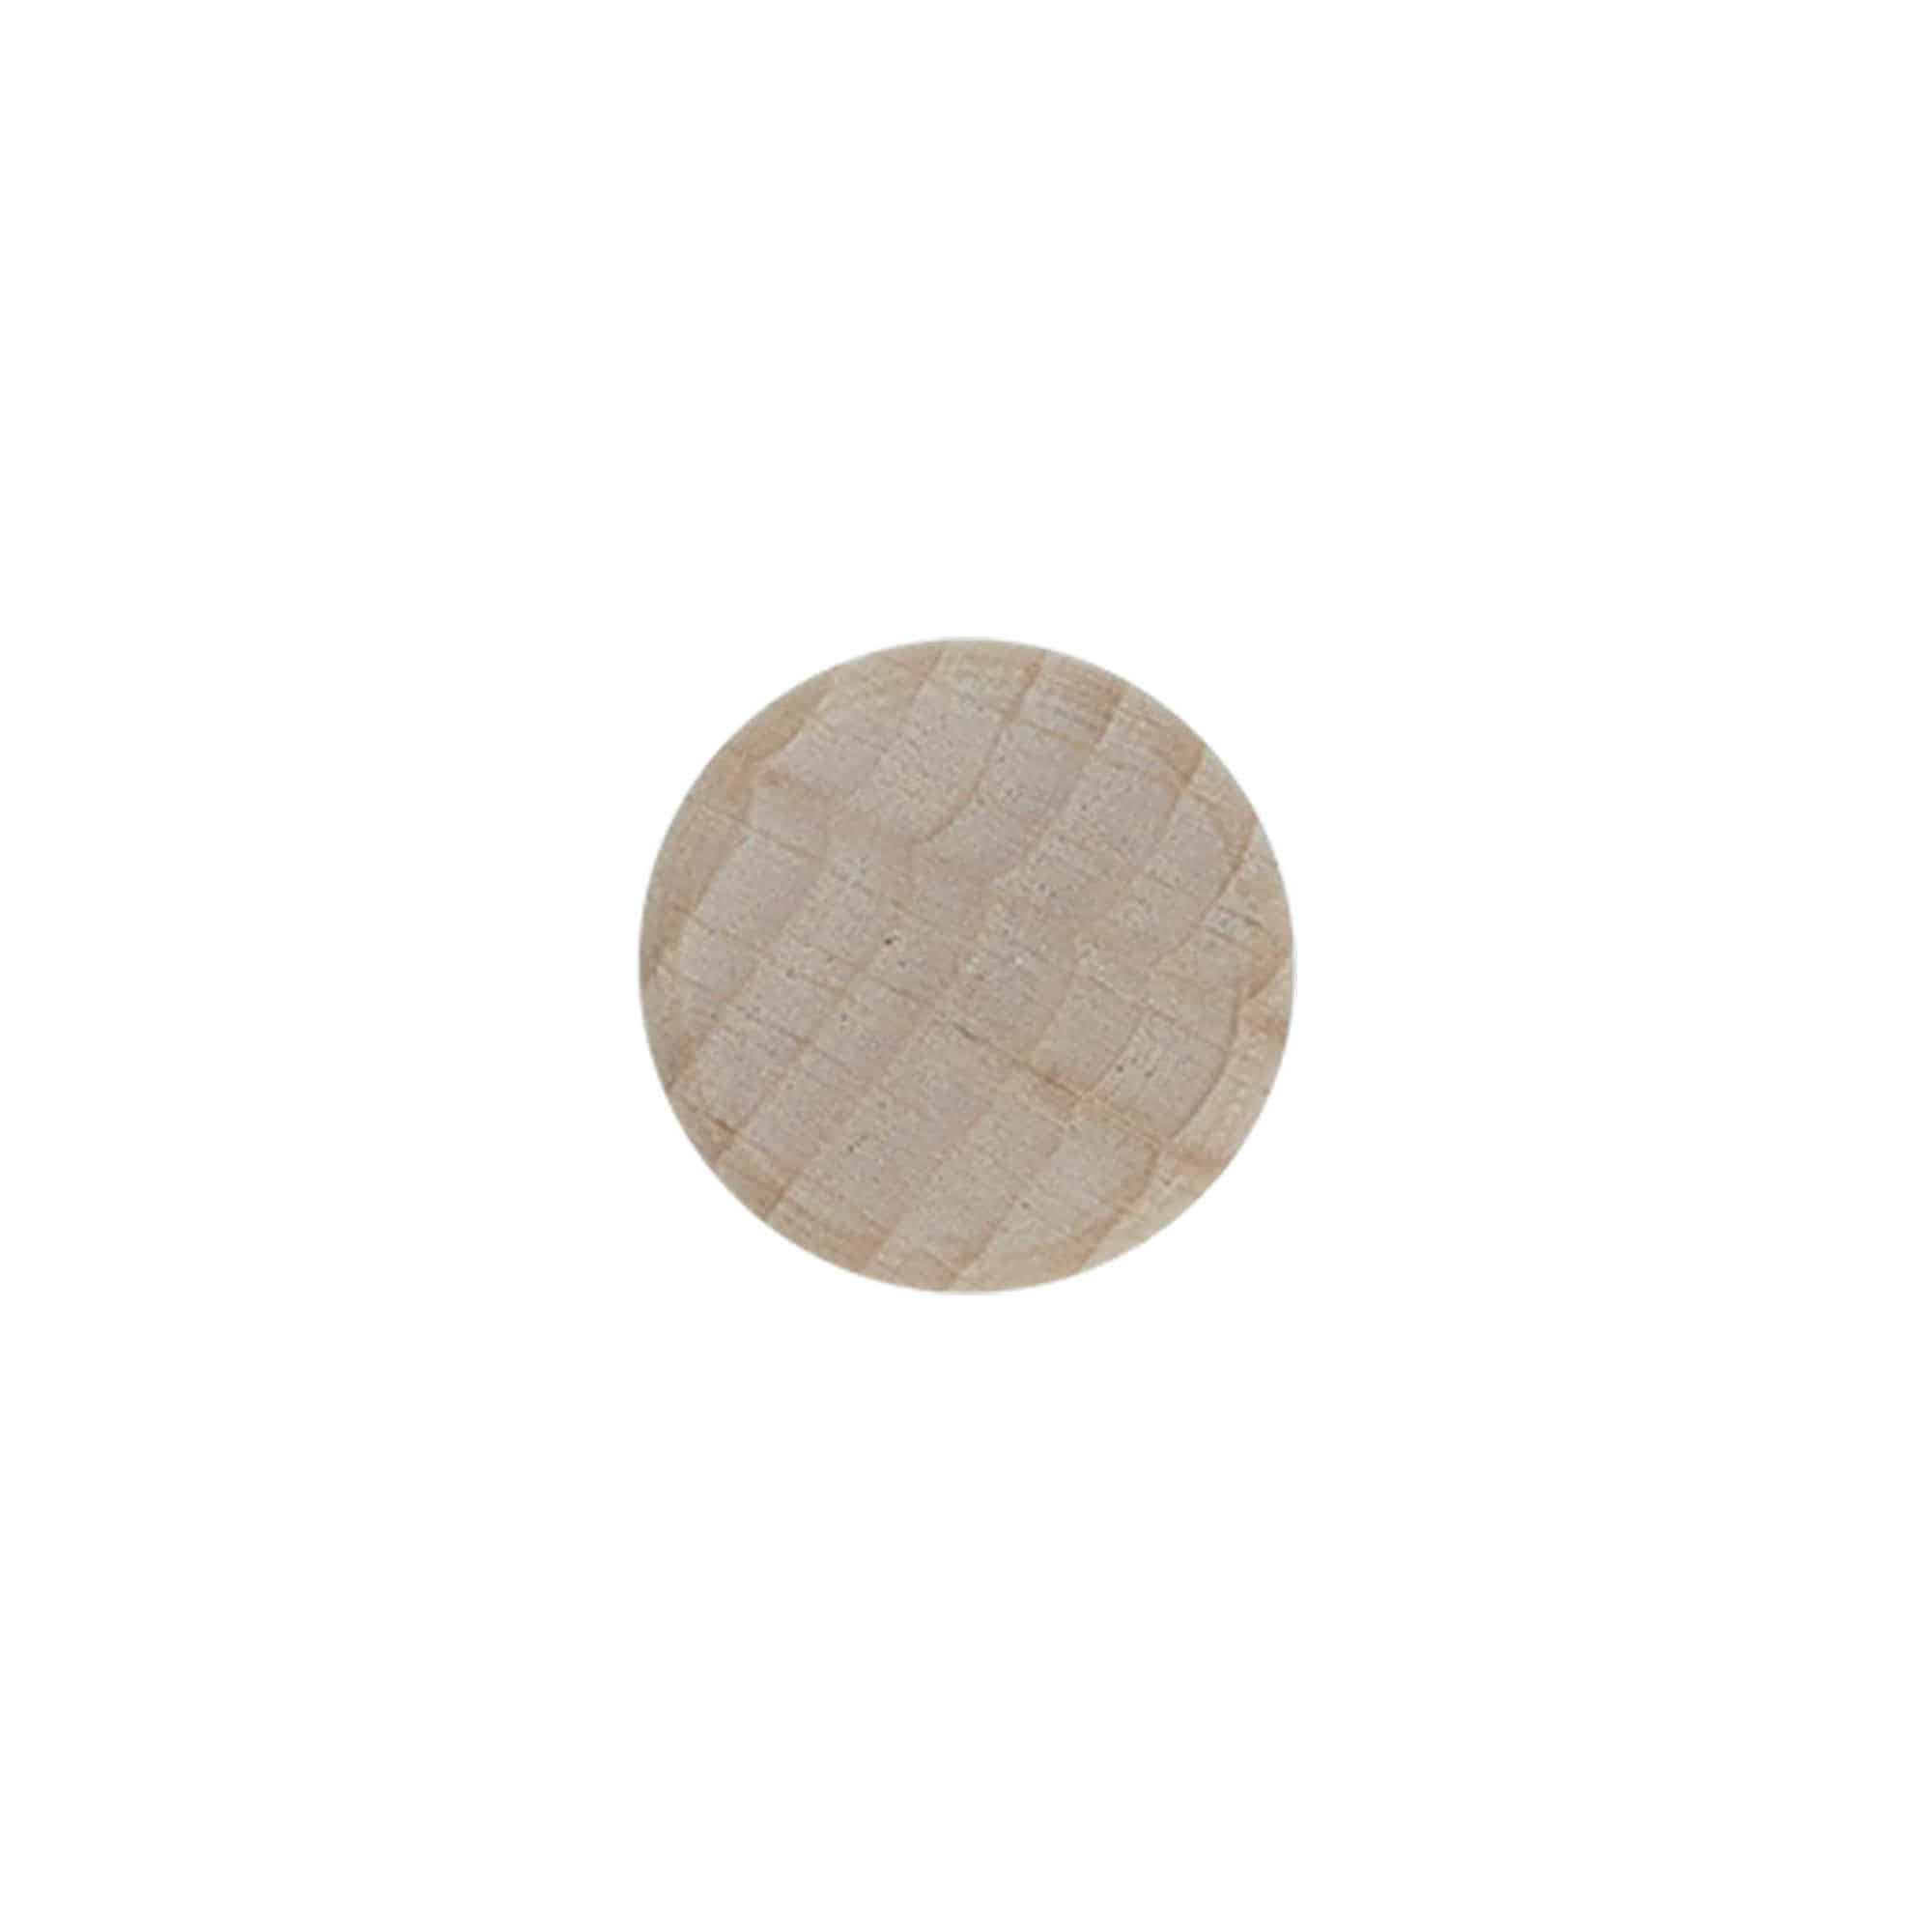 Dopkurk, 19 mm, hout, voor monding: kurk